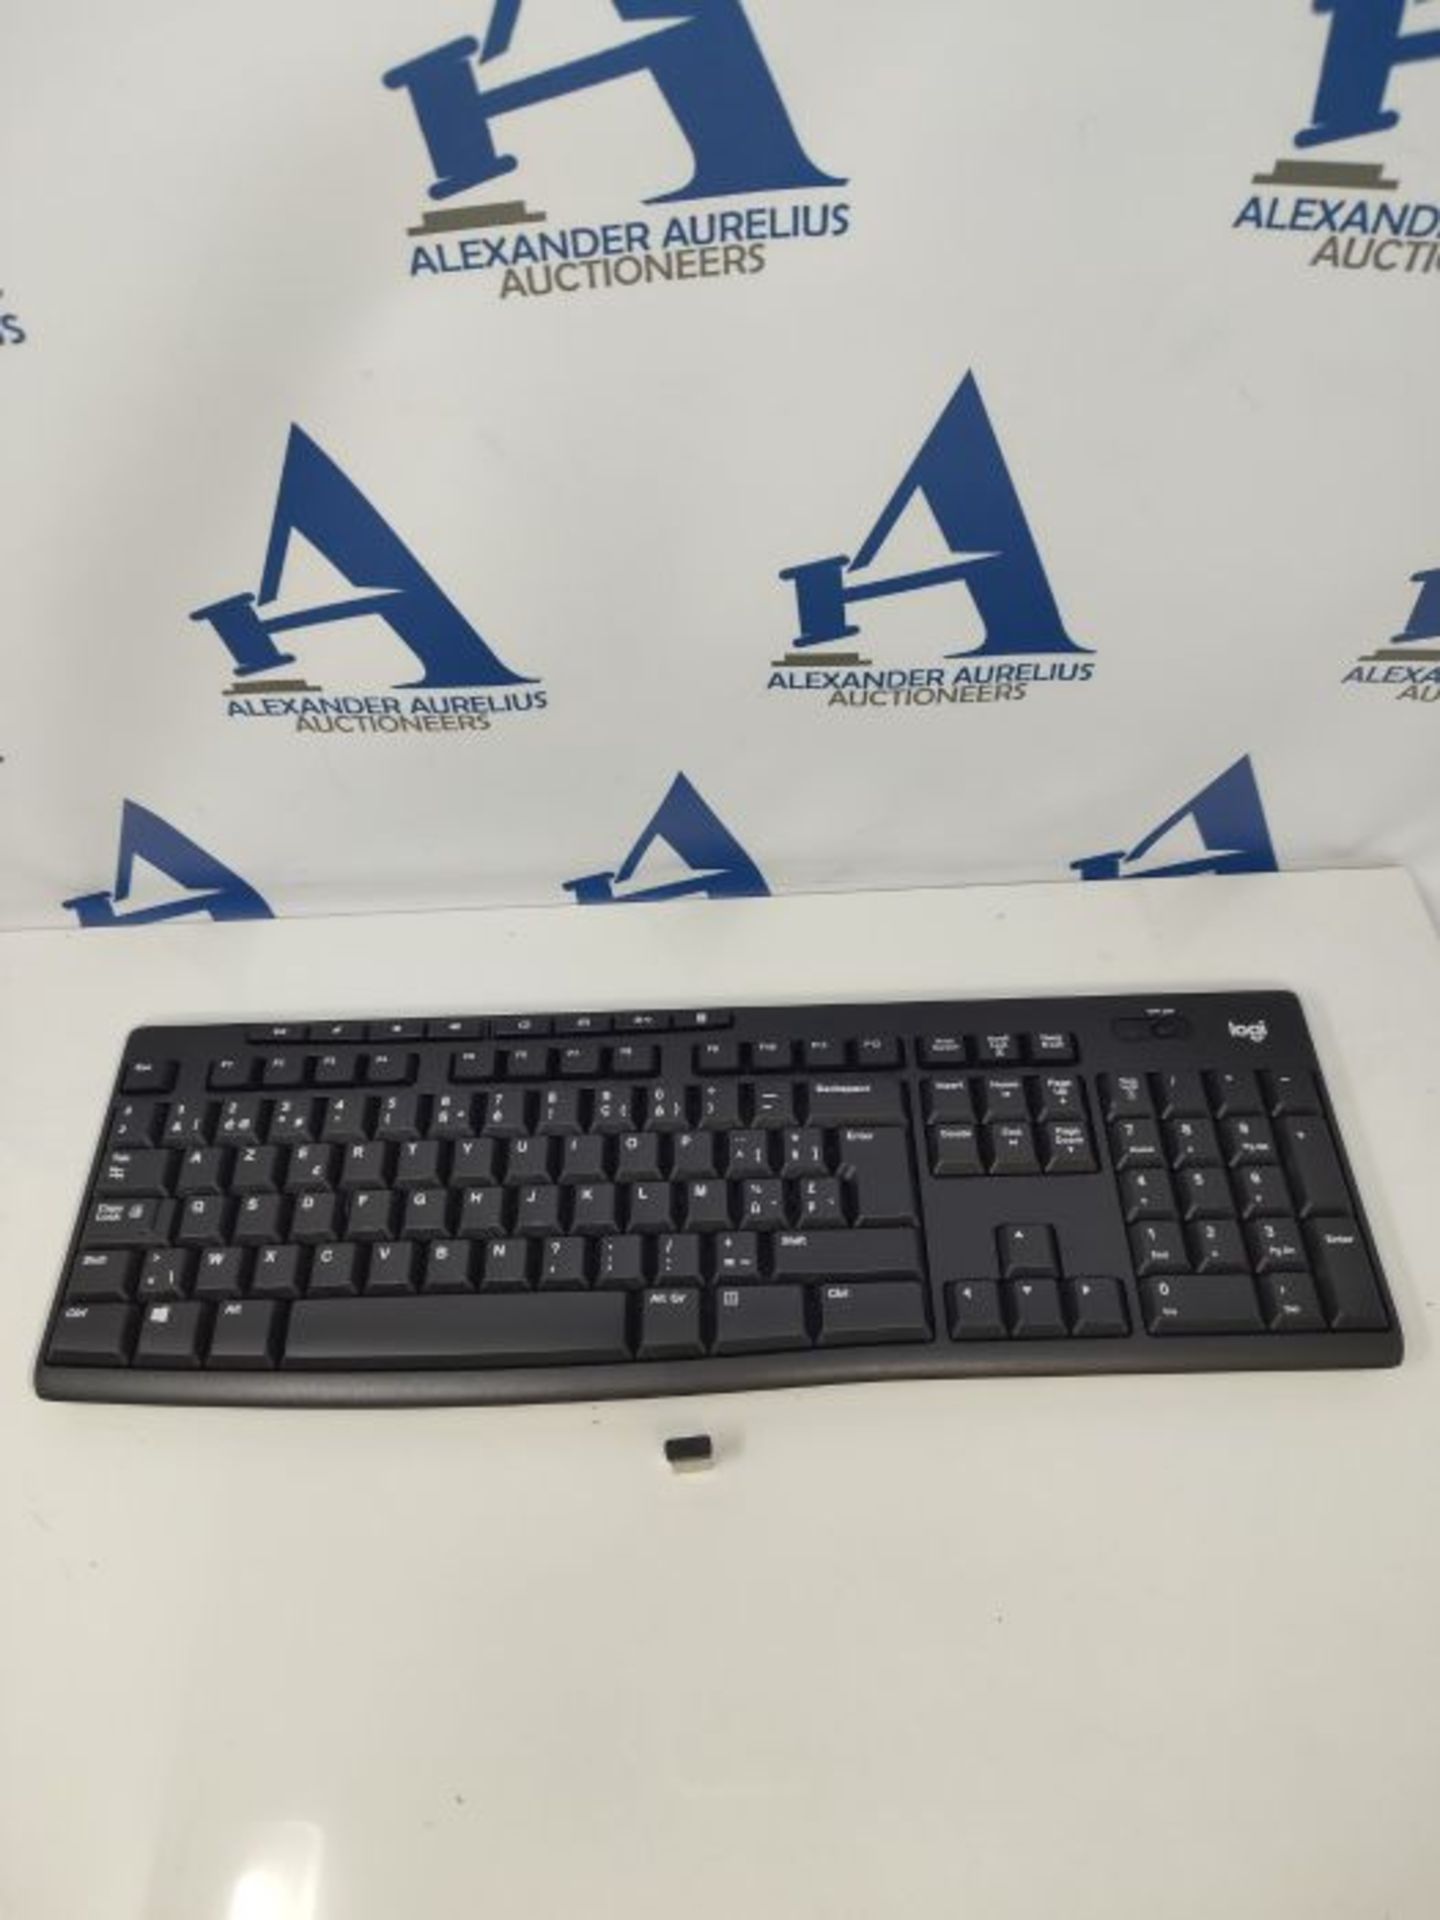 Logitech K270 Wireless Keyboard for Windows, AZERTY Belgian Layout - Black - Image 3 of 3